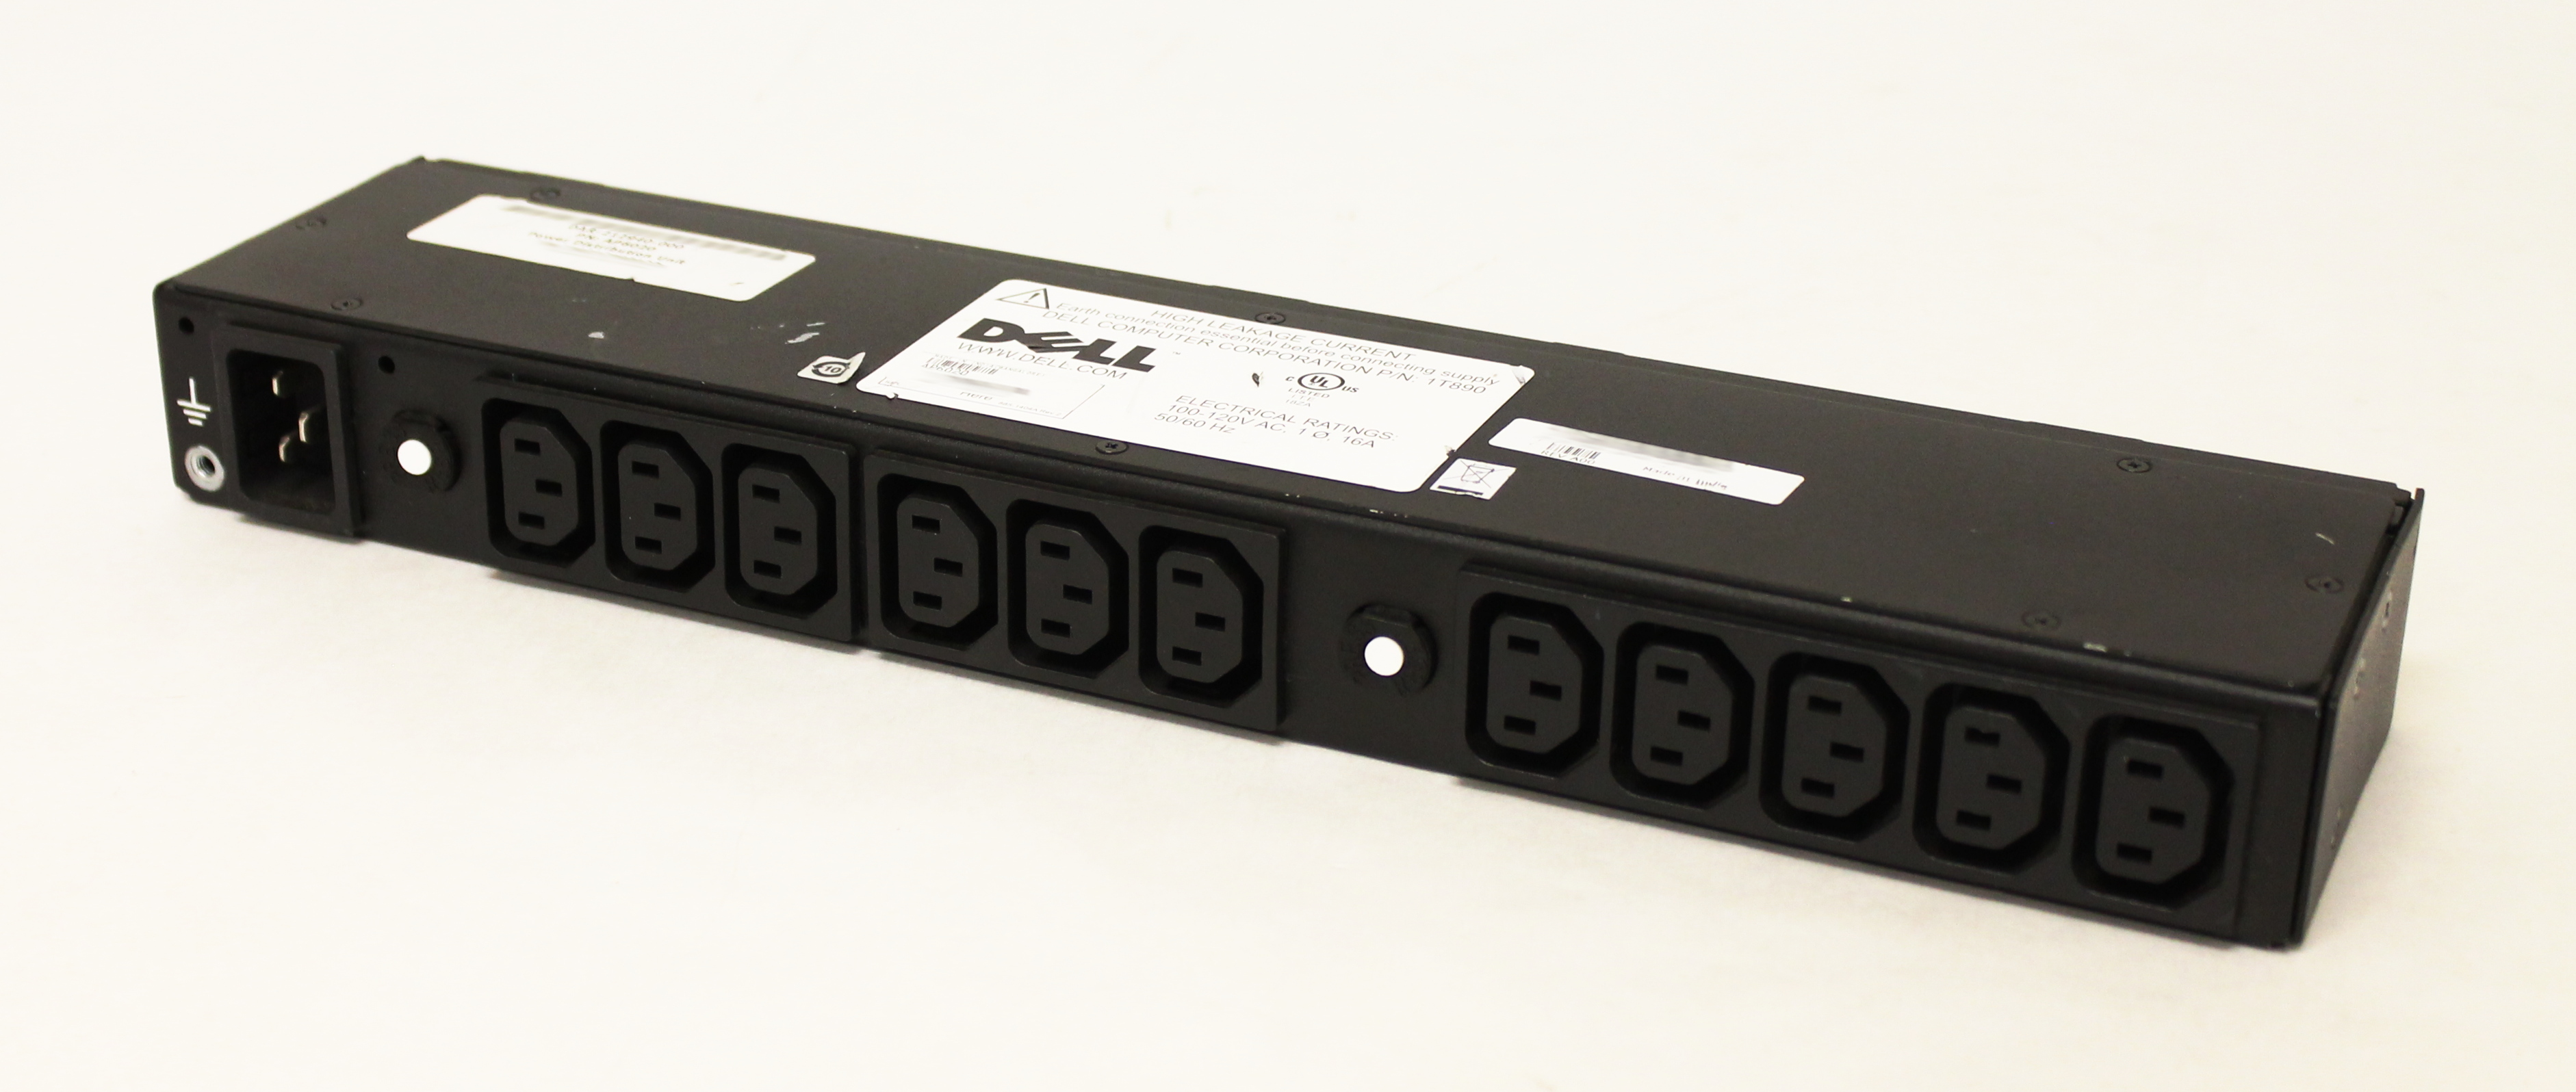 Dell AP6020 PDU Rapid Power Distribution Unit 11-Port 100-120V 16A 50/60Hz 1T890